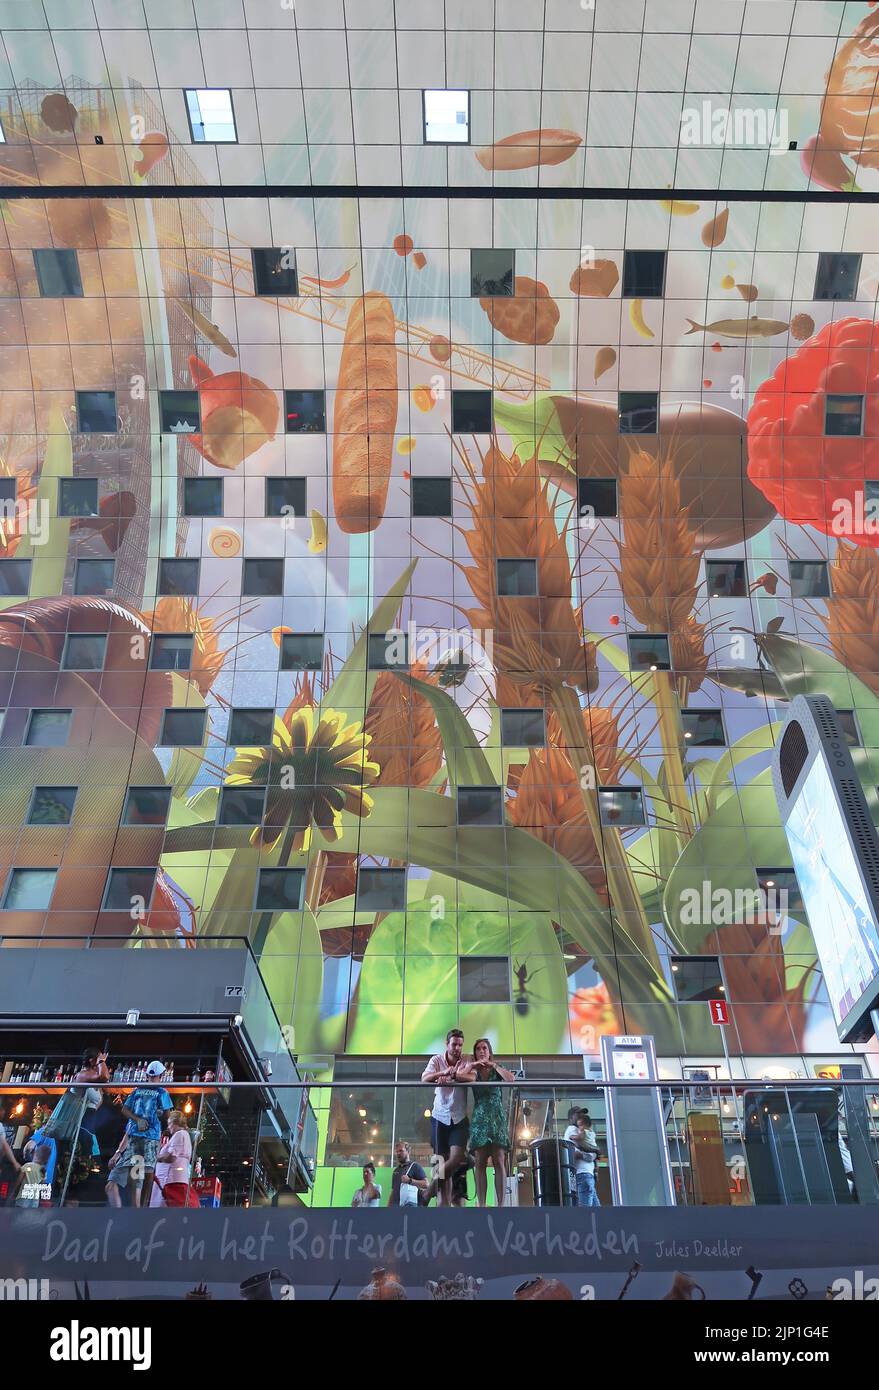 Die Innenansicht der Markthall (Markthalle) in Rotterdam zeigt die geschwungene Decke mit einem riesigen Wandgemälde mit Obst und Gemüse. Paar im Vordergrund. Stockfoto